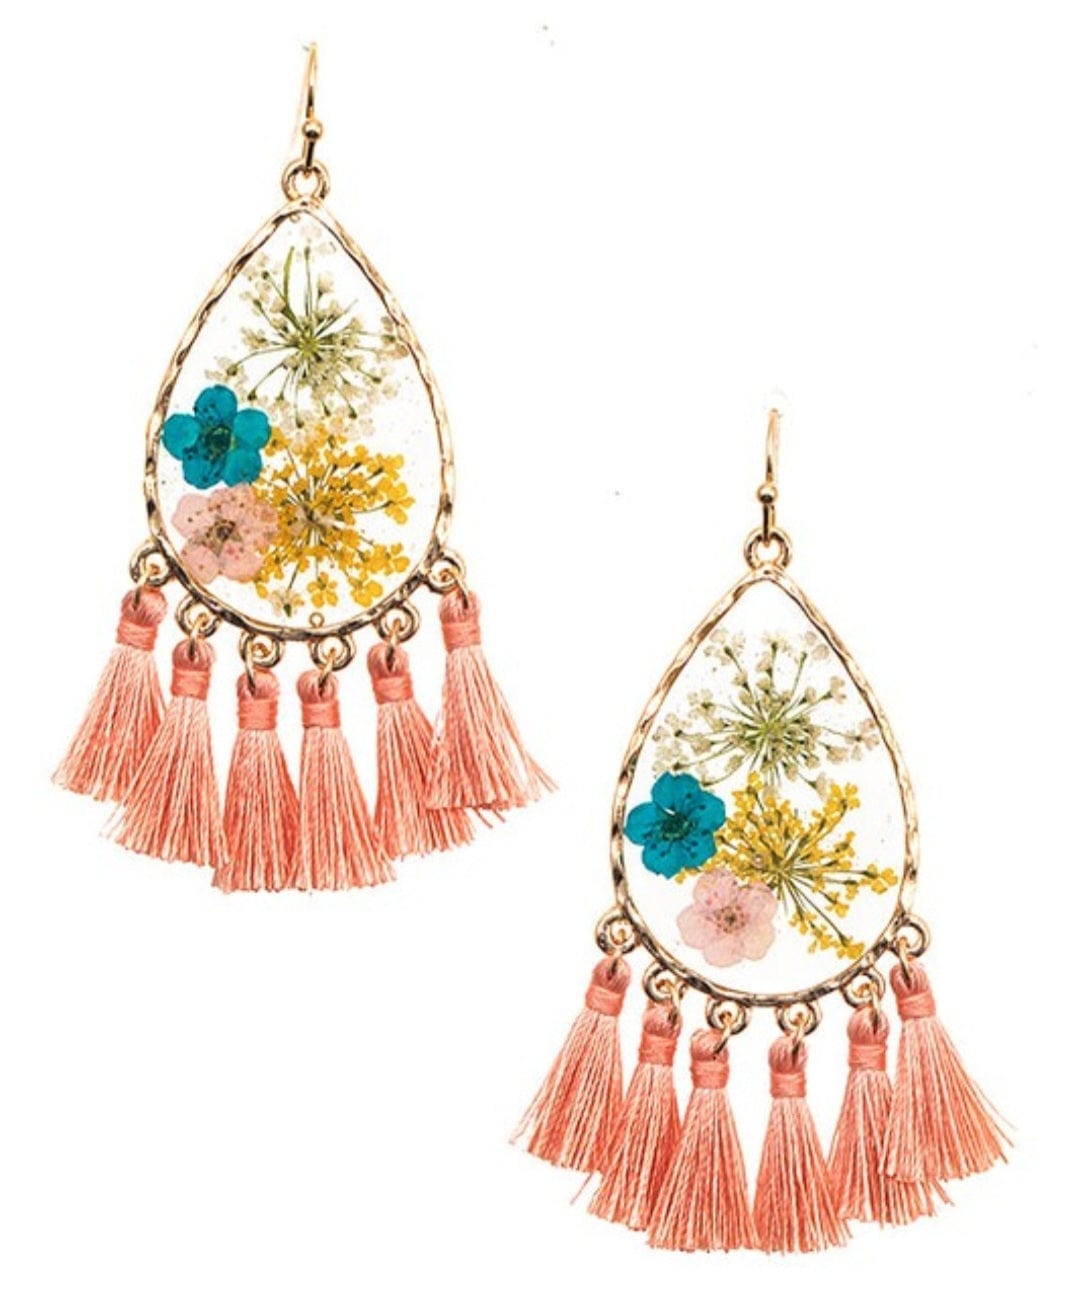 YD Boutique LLC Earrings Peach Floral Resin Teardrop Tassel Earring